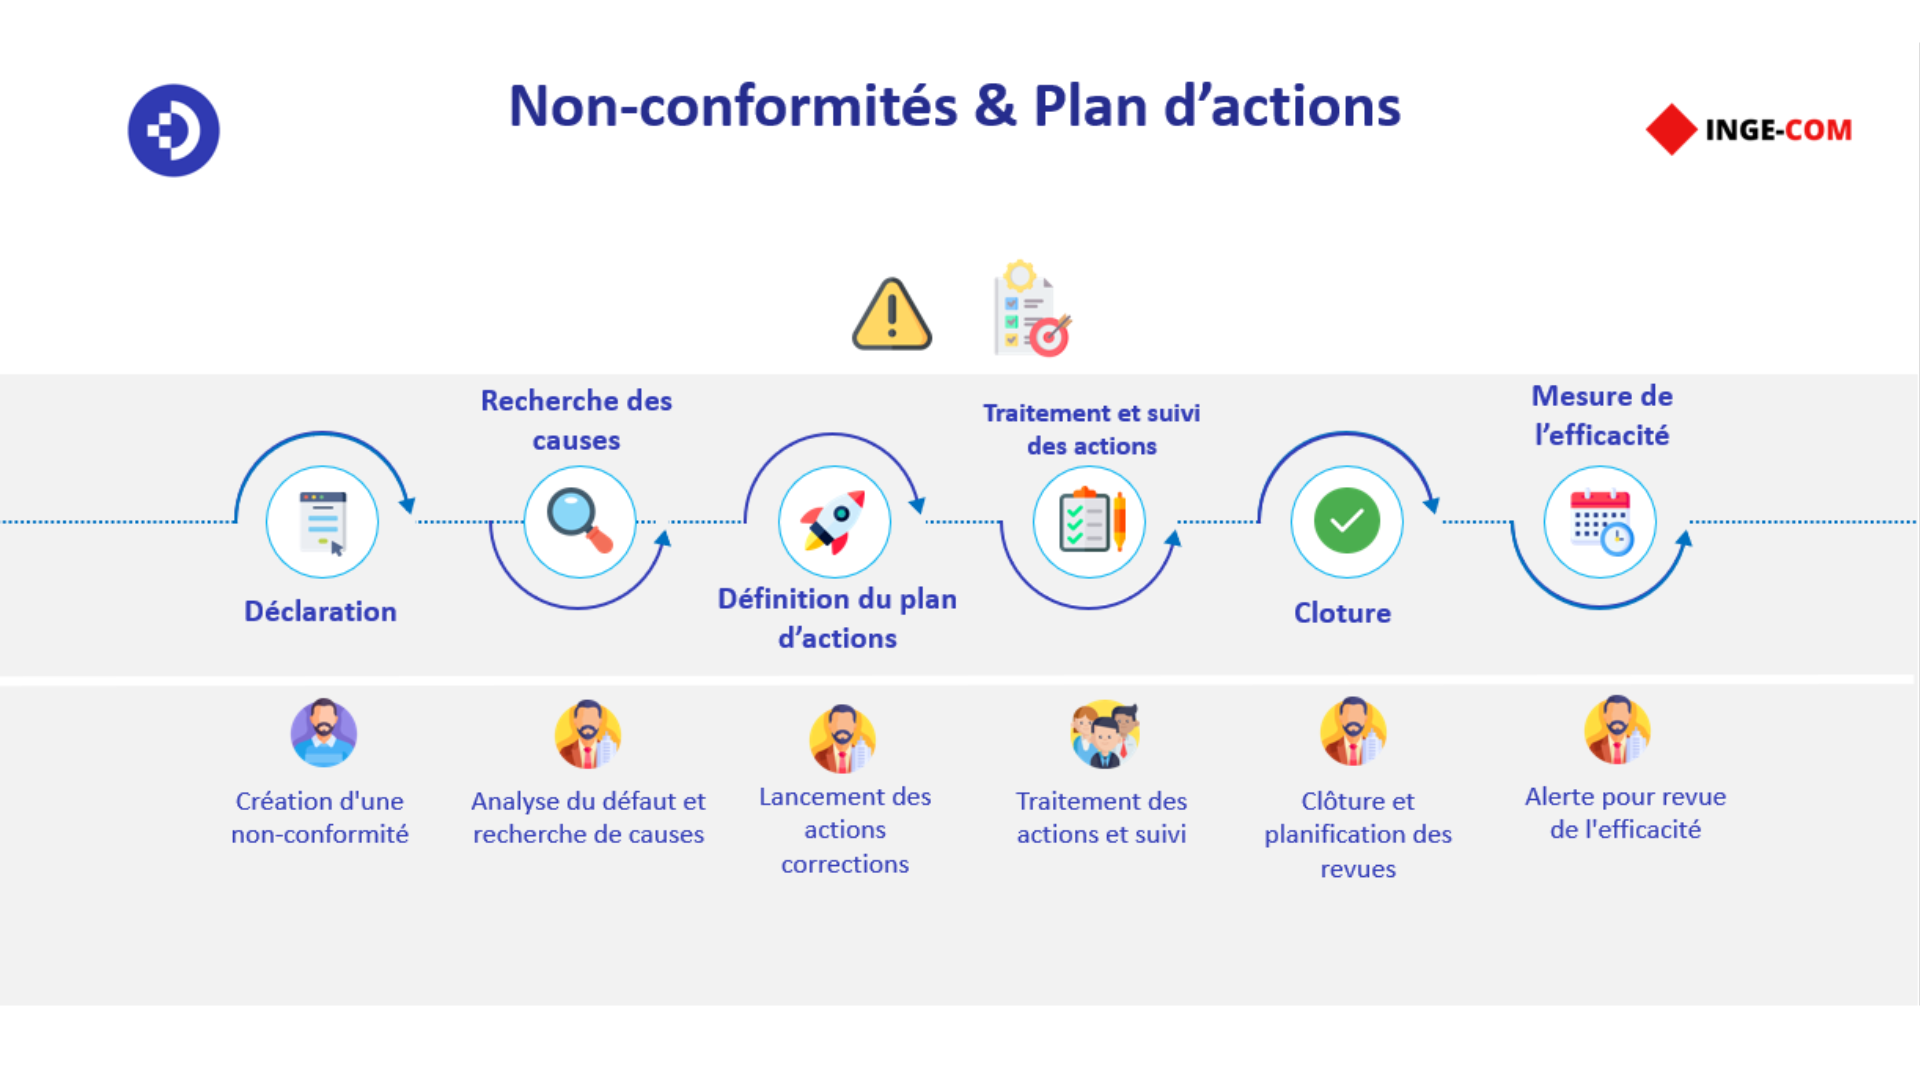 Non-conformités & Plan d'actions